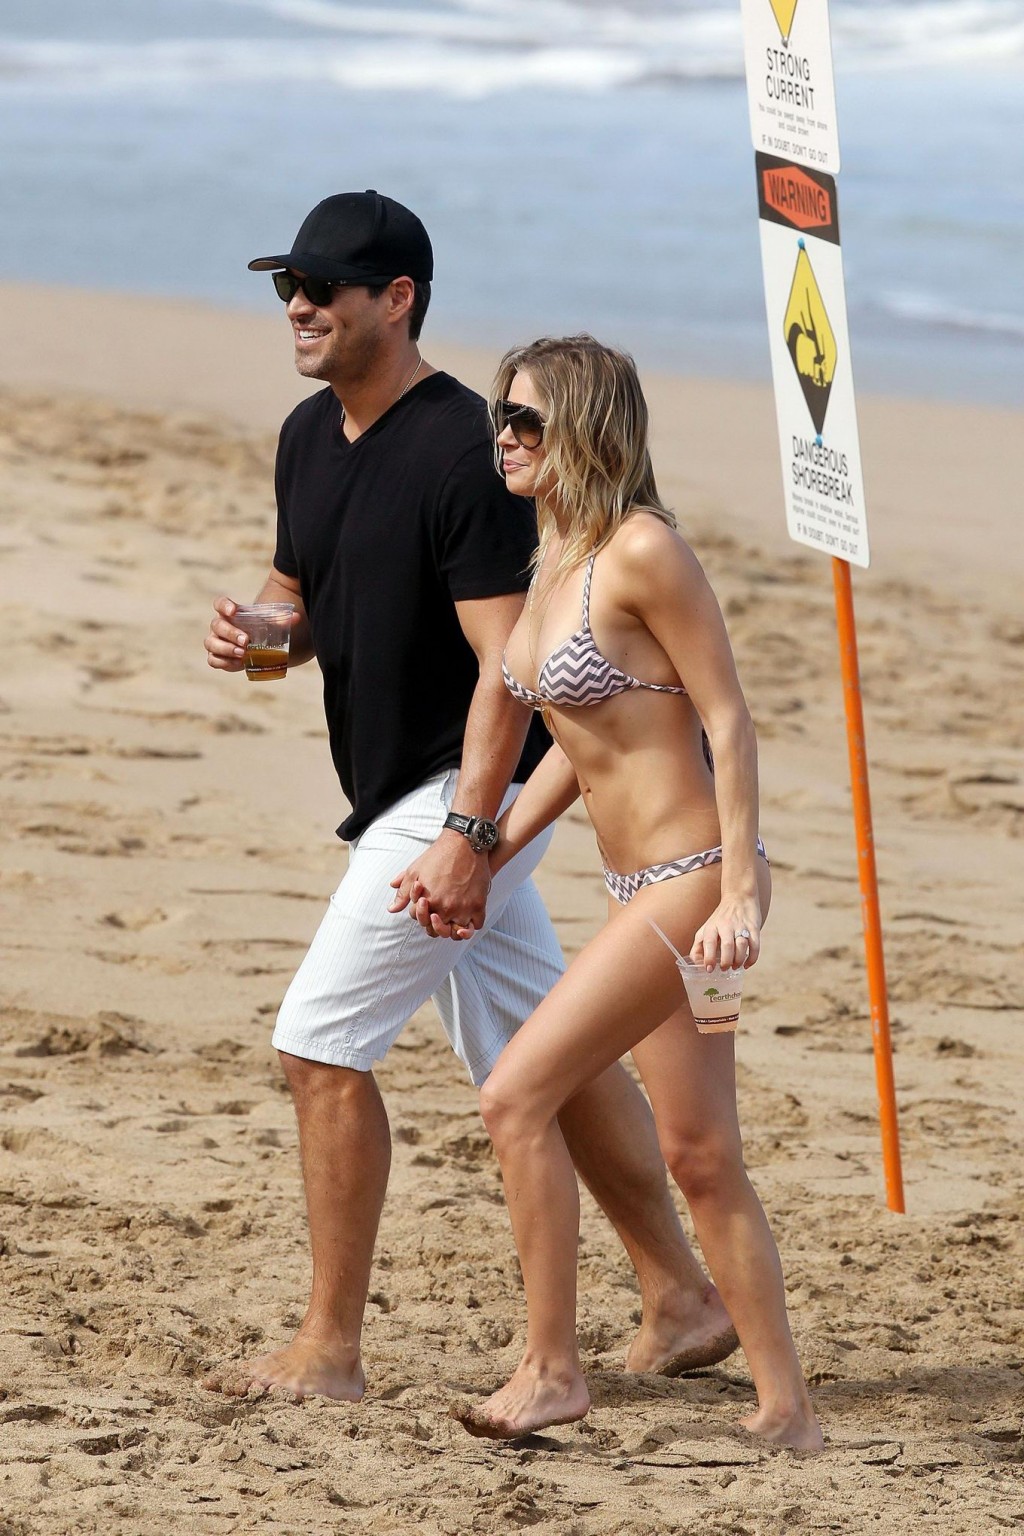 Leann rimes en bikini acariciando con su marido en una playa de hawaii
 #75276859